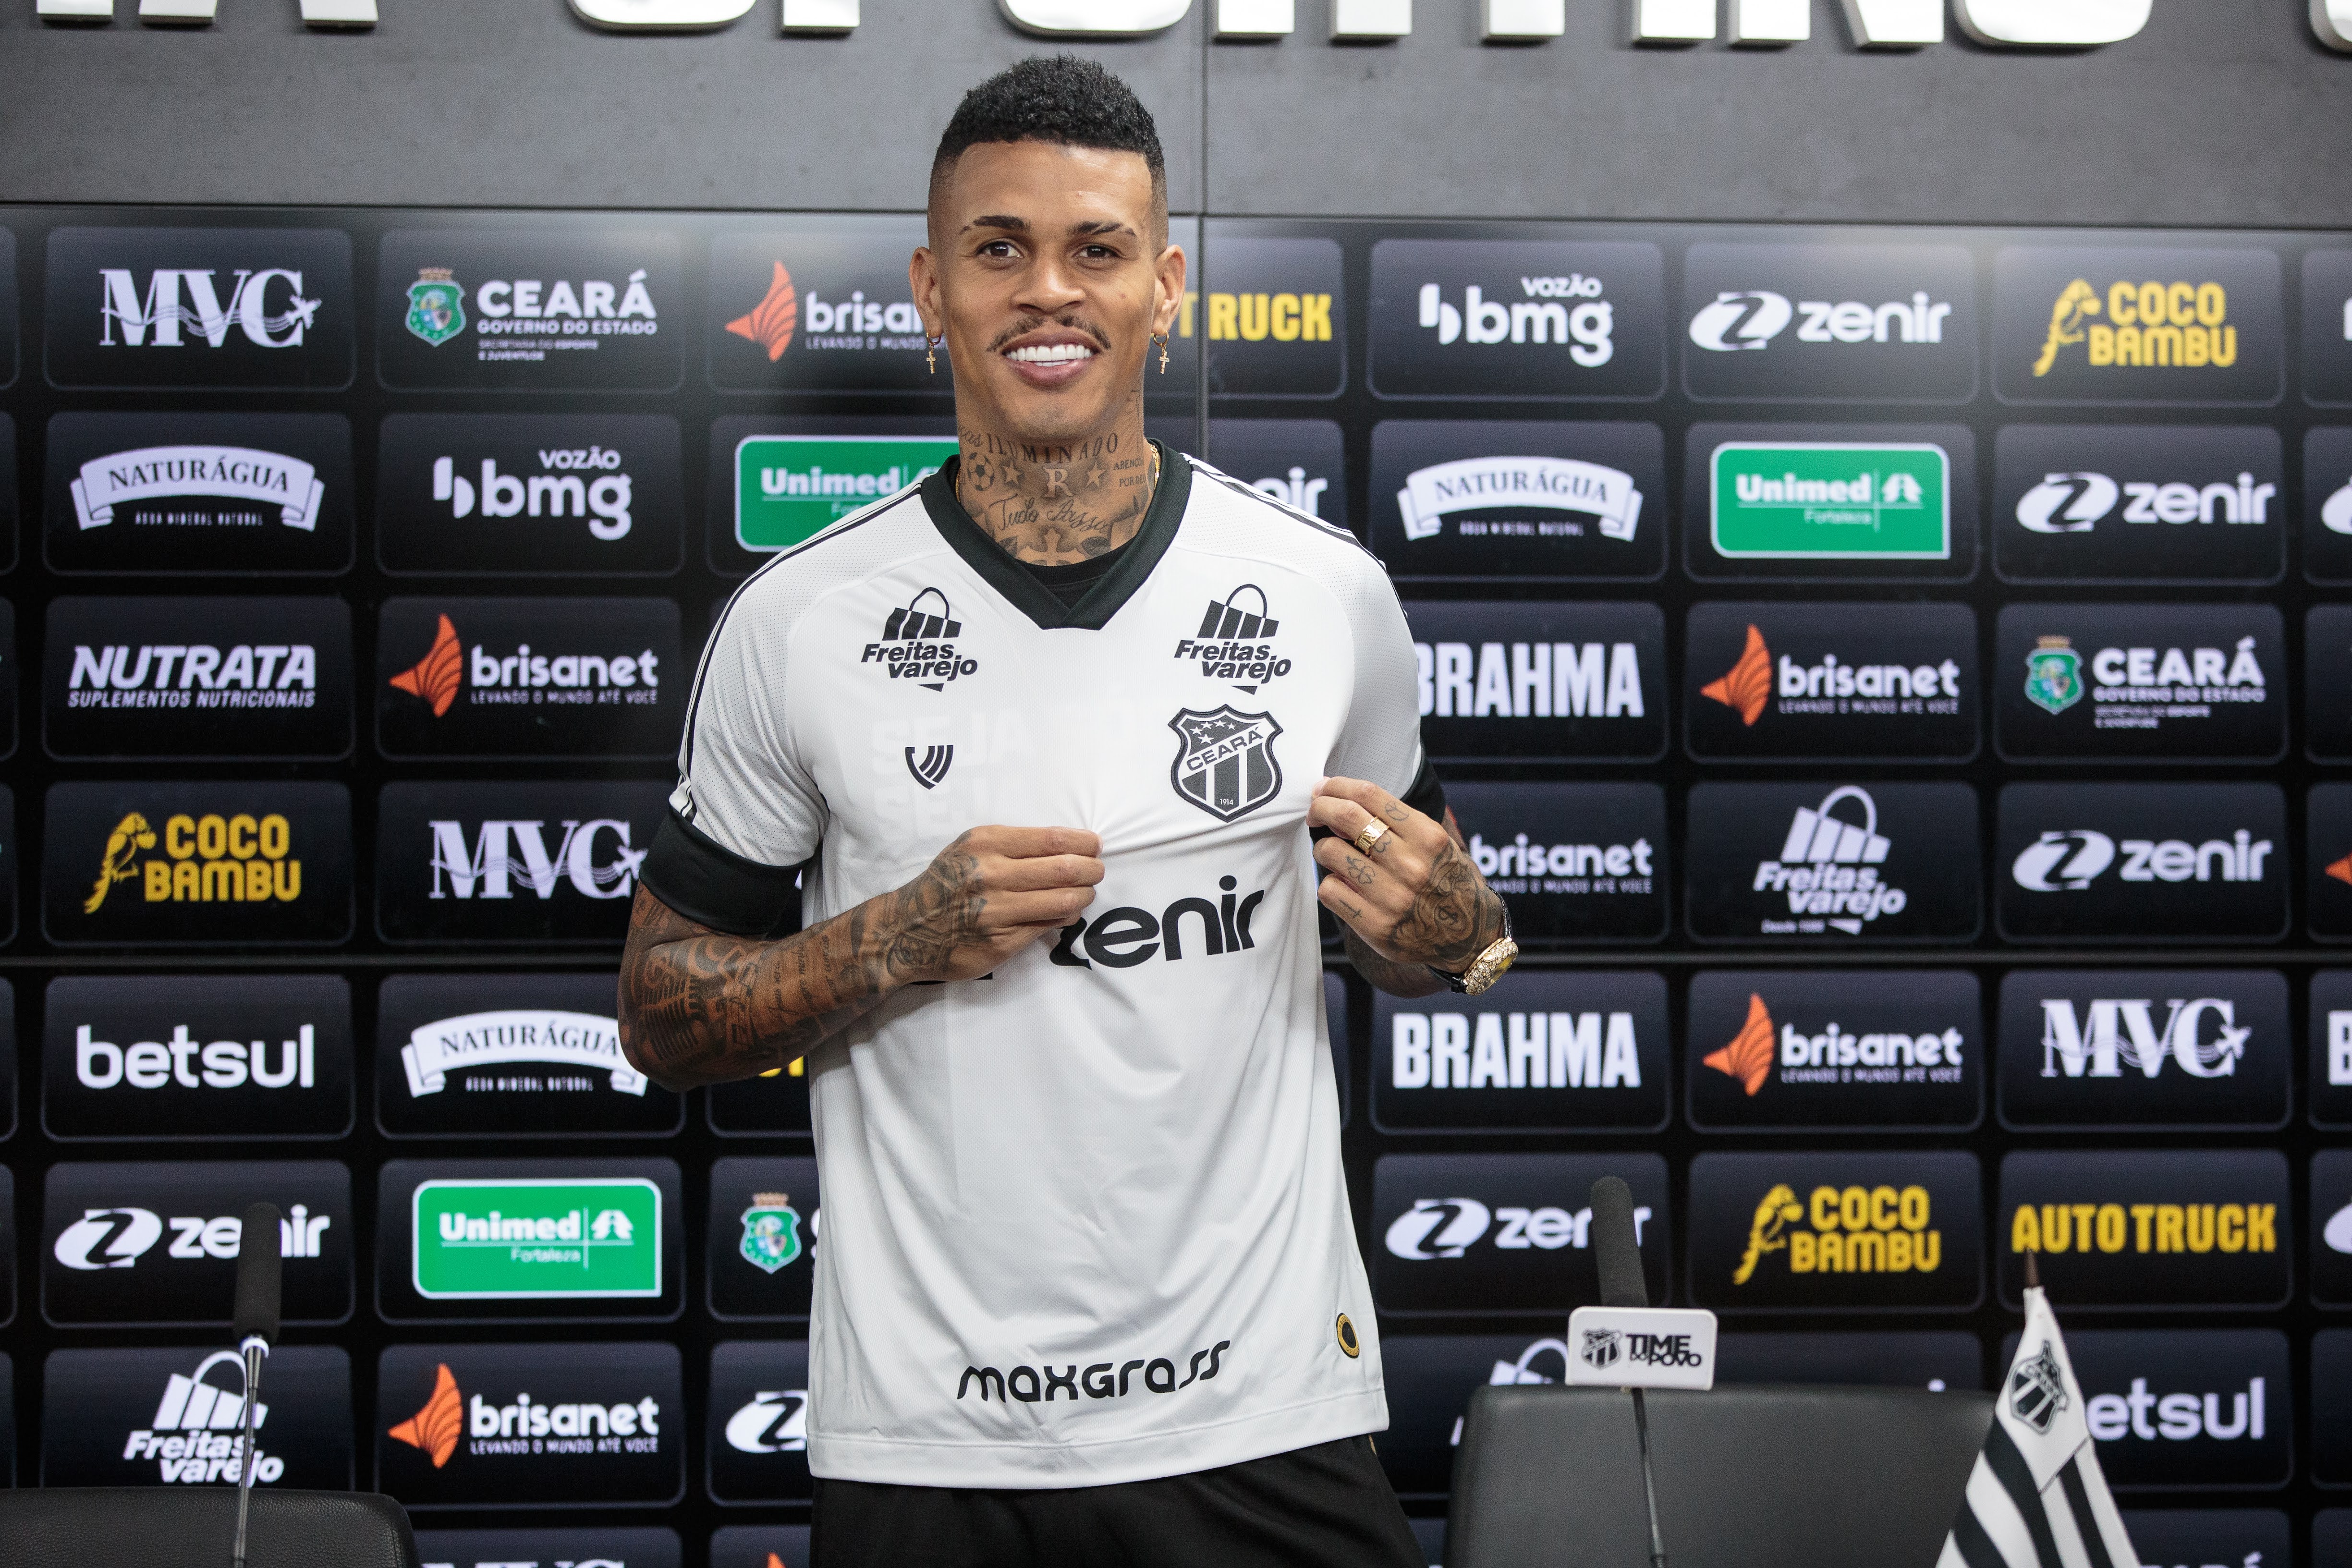 Em apresentação oficial, Richard afirma: “Muito feliz em estar vestindo essa camisa gigante do futebol brasileiro”